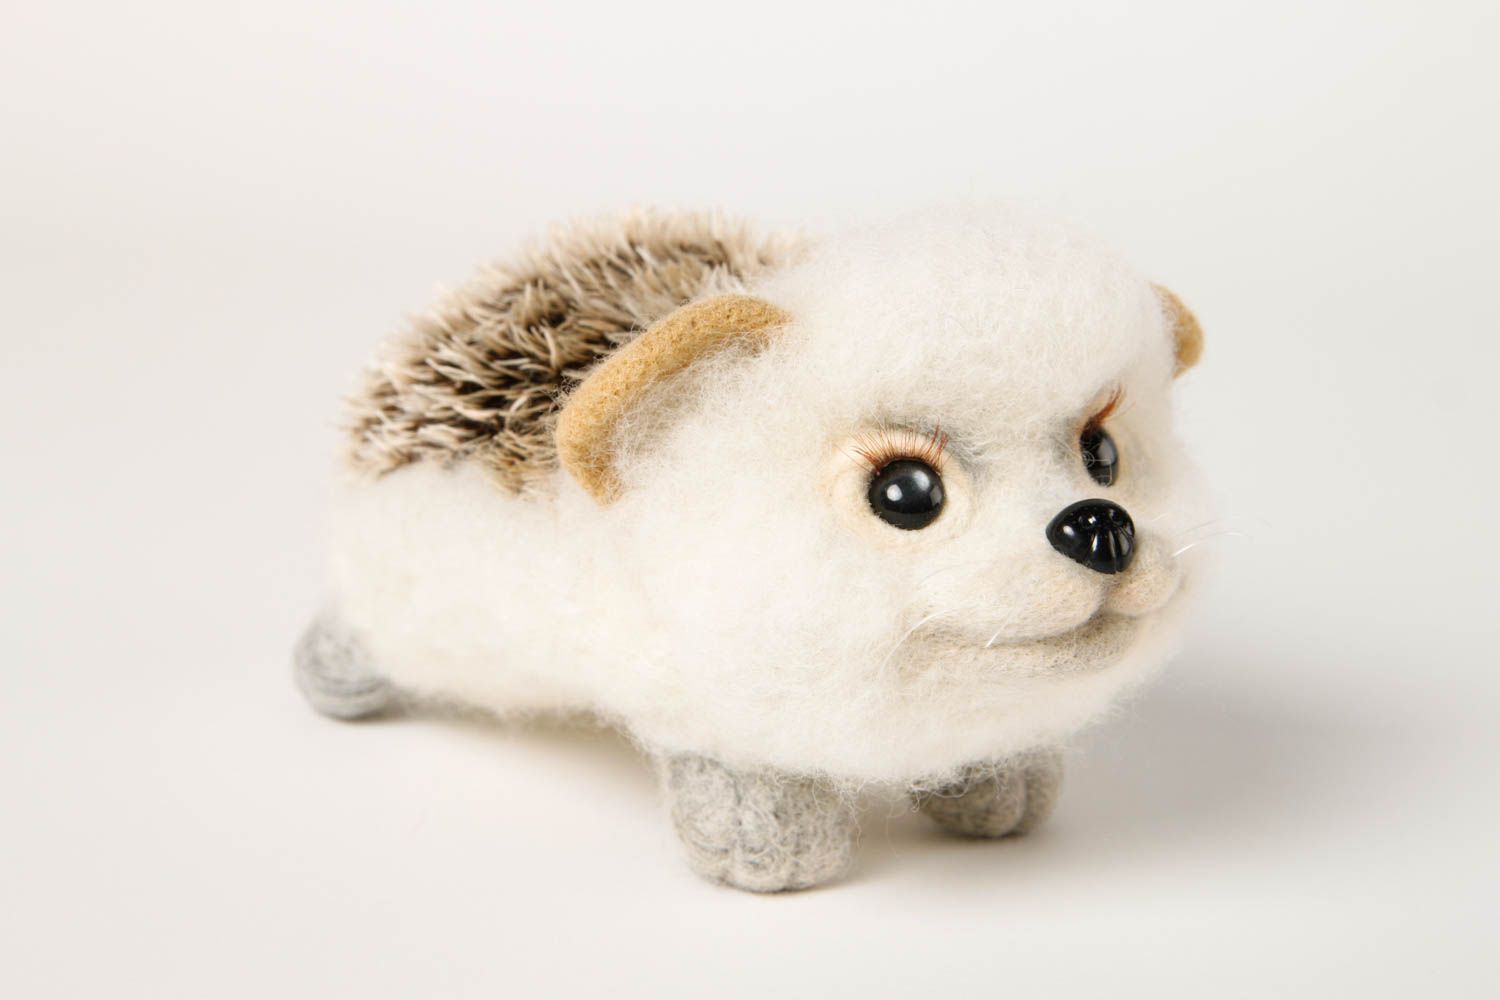 Handmade kleines Spielzeug Geschenk Idee Kuscheltier Igel Filz Tier aus Wolle foto 3